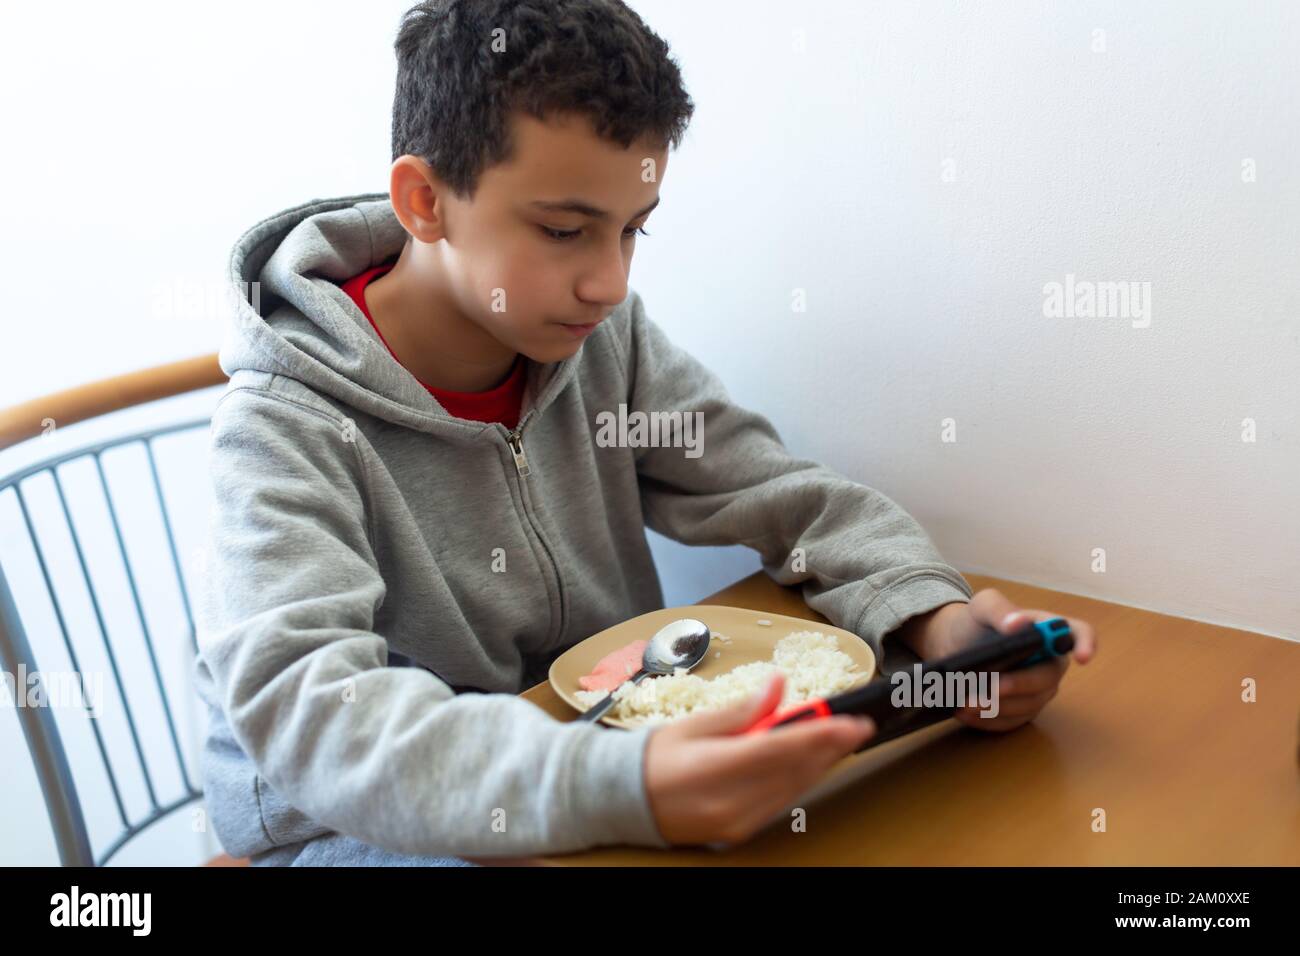 Der Junge isst schlecht vom Spiel abgelenkt. Kinder essen Reis und surfen im Internet oder spielen Videospiele auf der Konsole Stockfoto